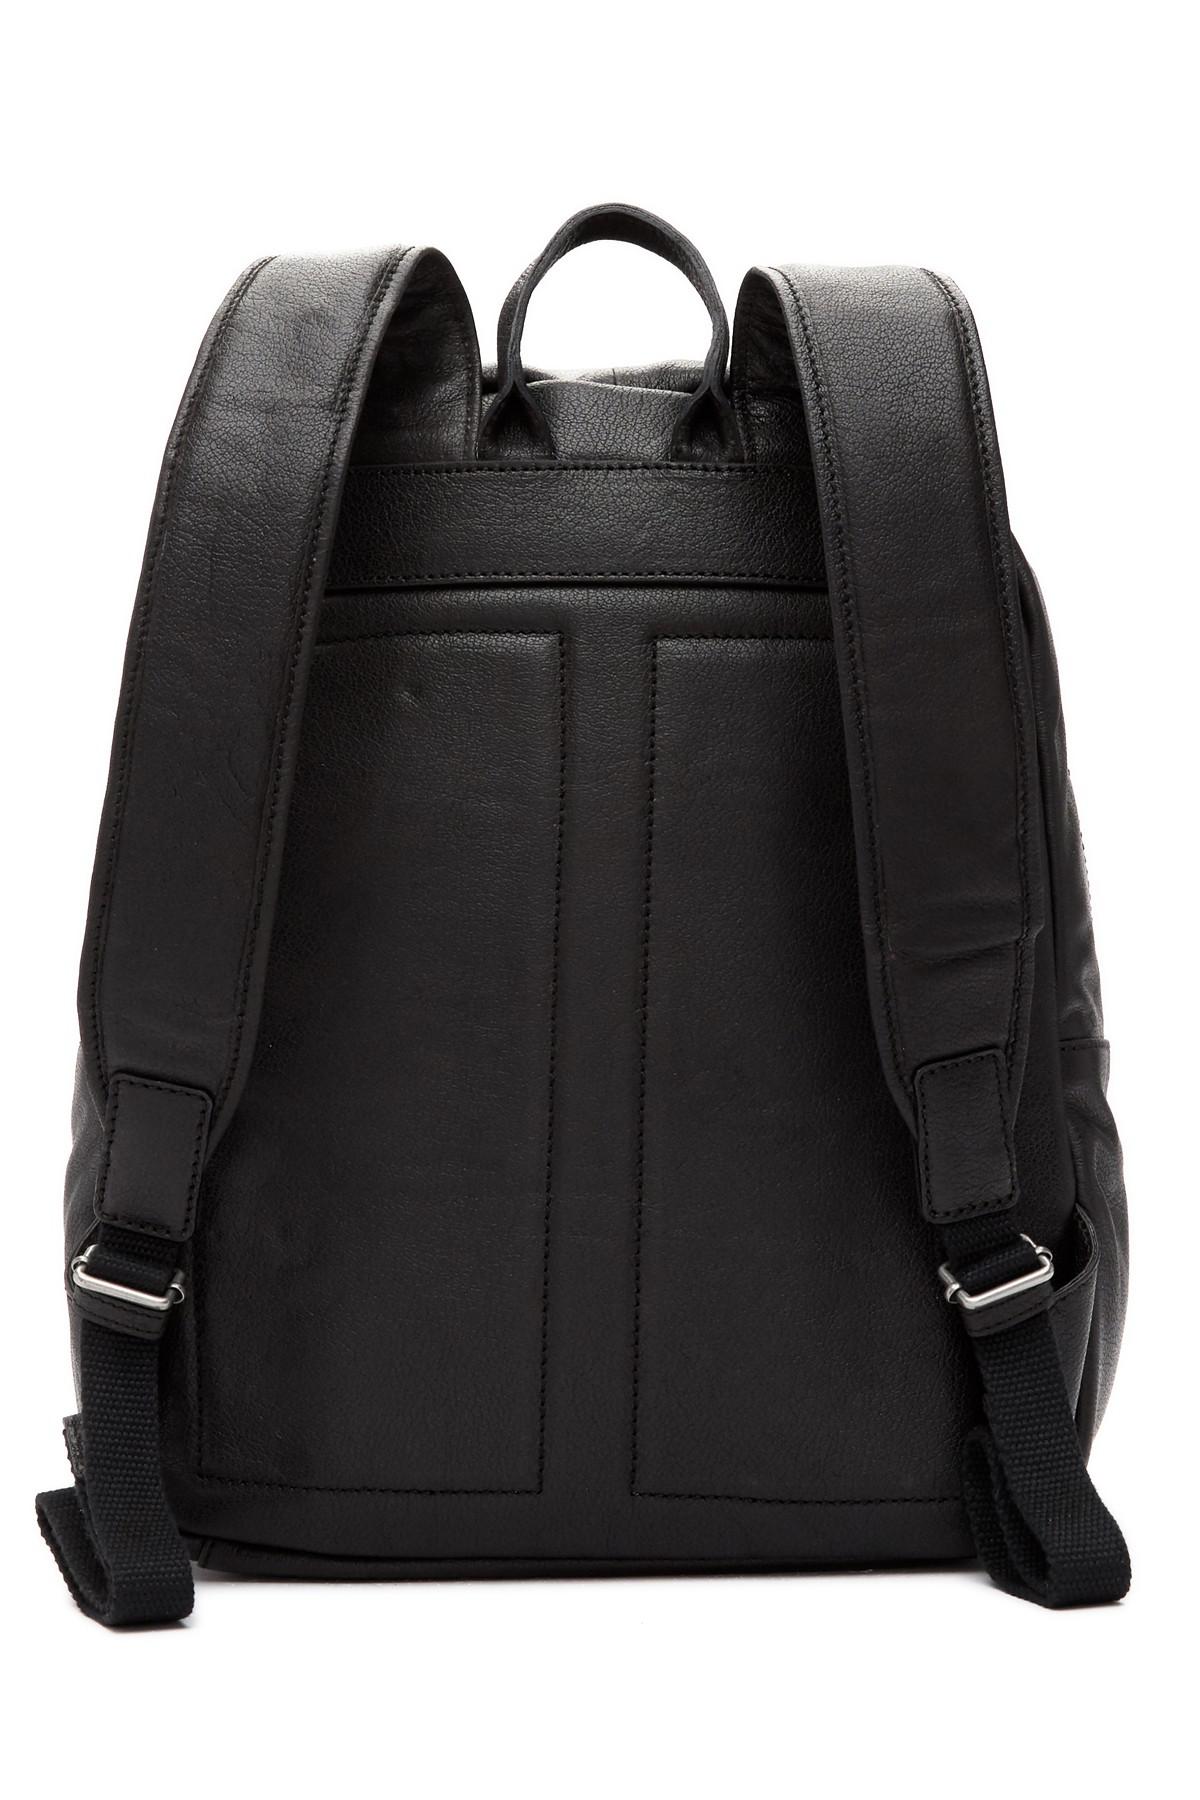 Frye Dylan Leather Backpack in Black for Men - Lyst